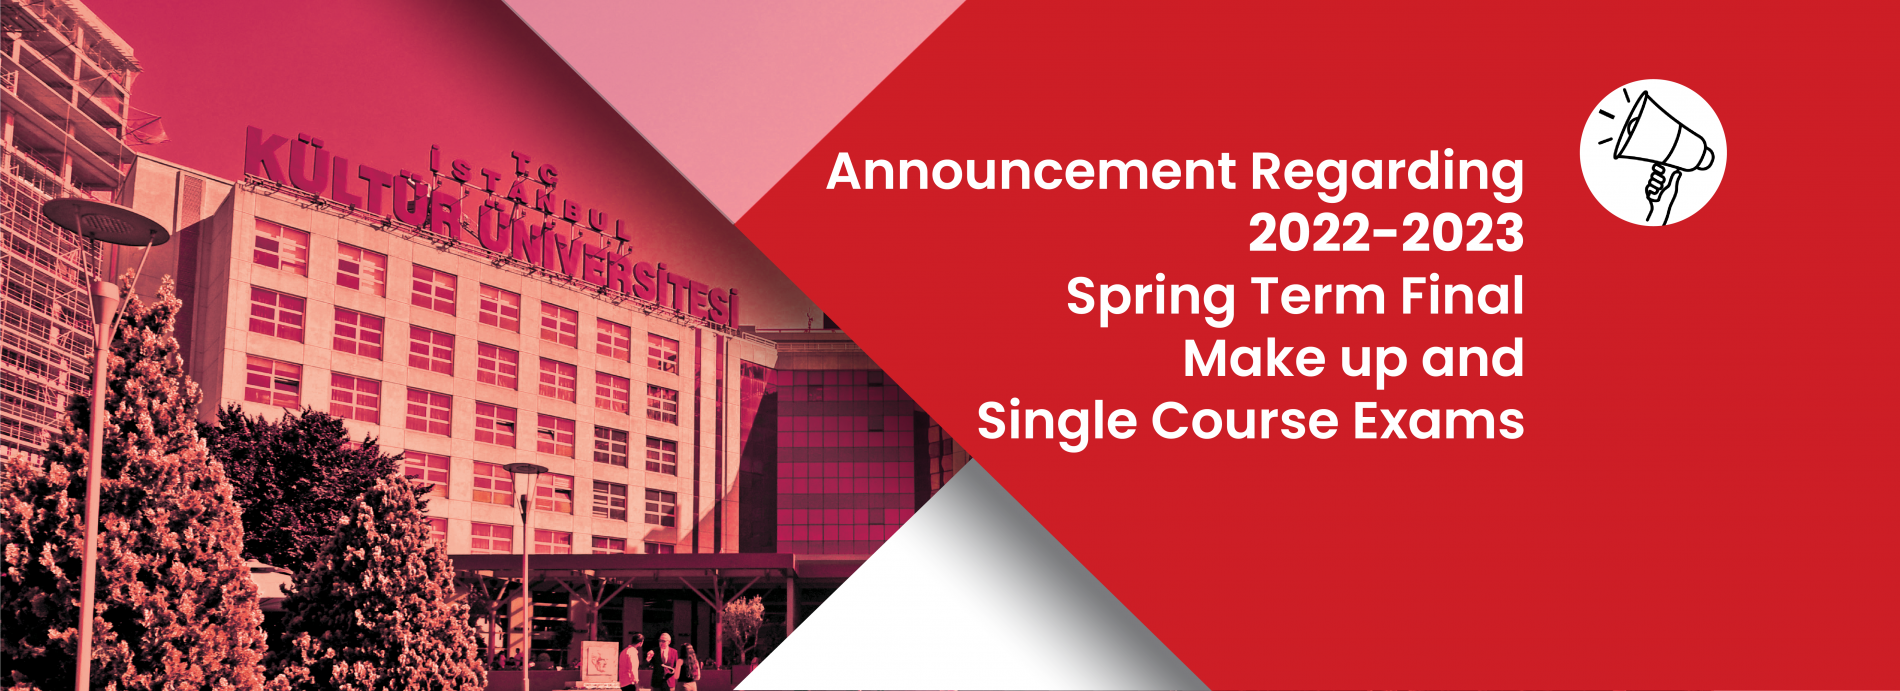 Announcement regarding 2022-2023 Spring Term Final, Make-up and Single Course Exams